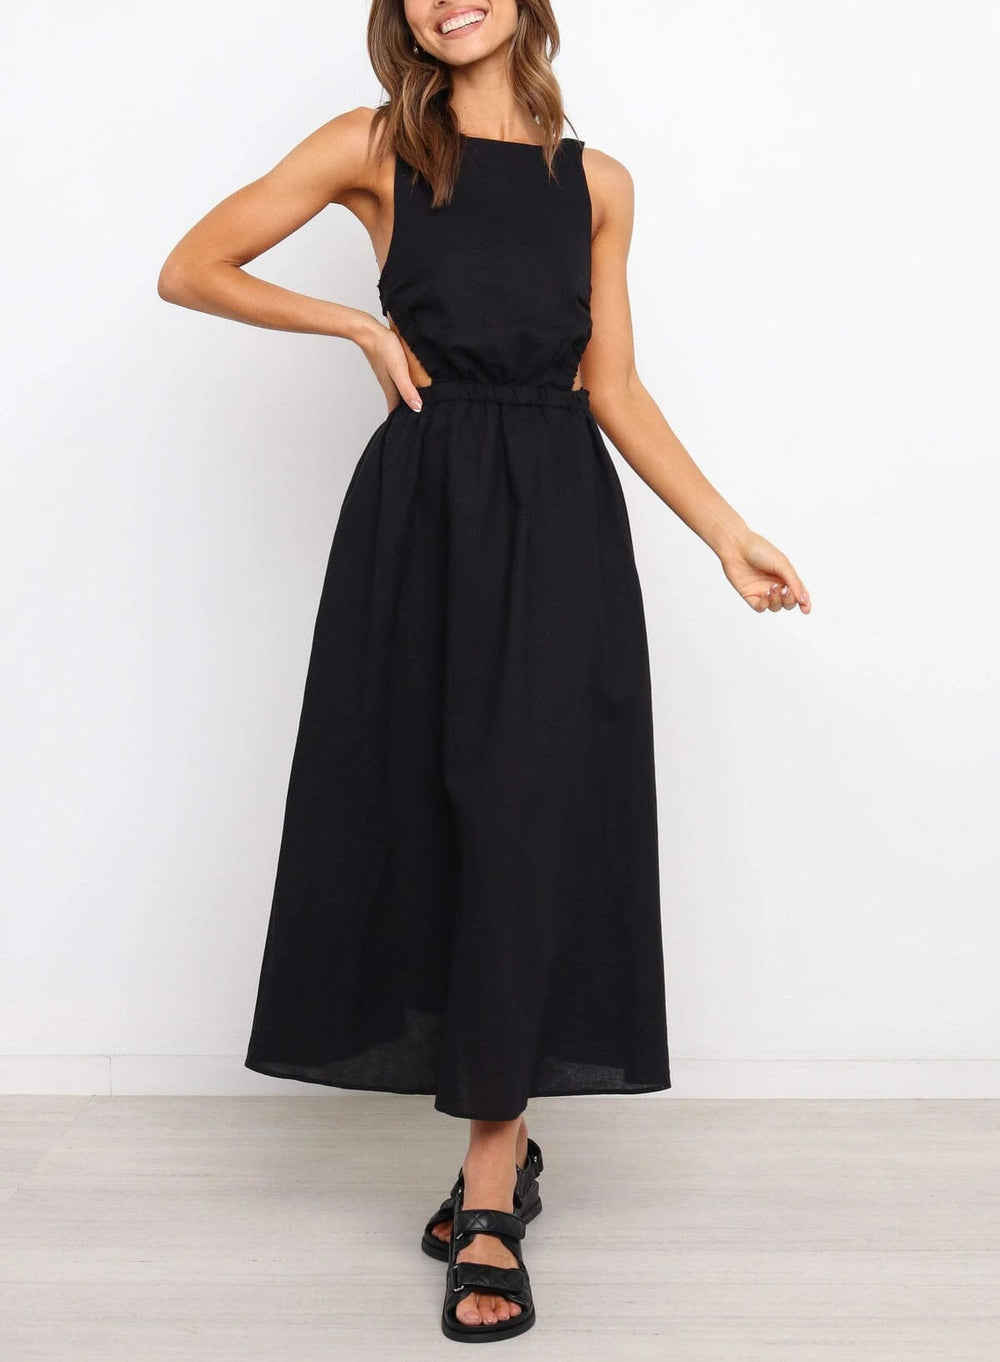 robe dos nu longue évasée noire, idéale pour un style bohème chic lors des soirées d'été ou des occasions spéciales